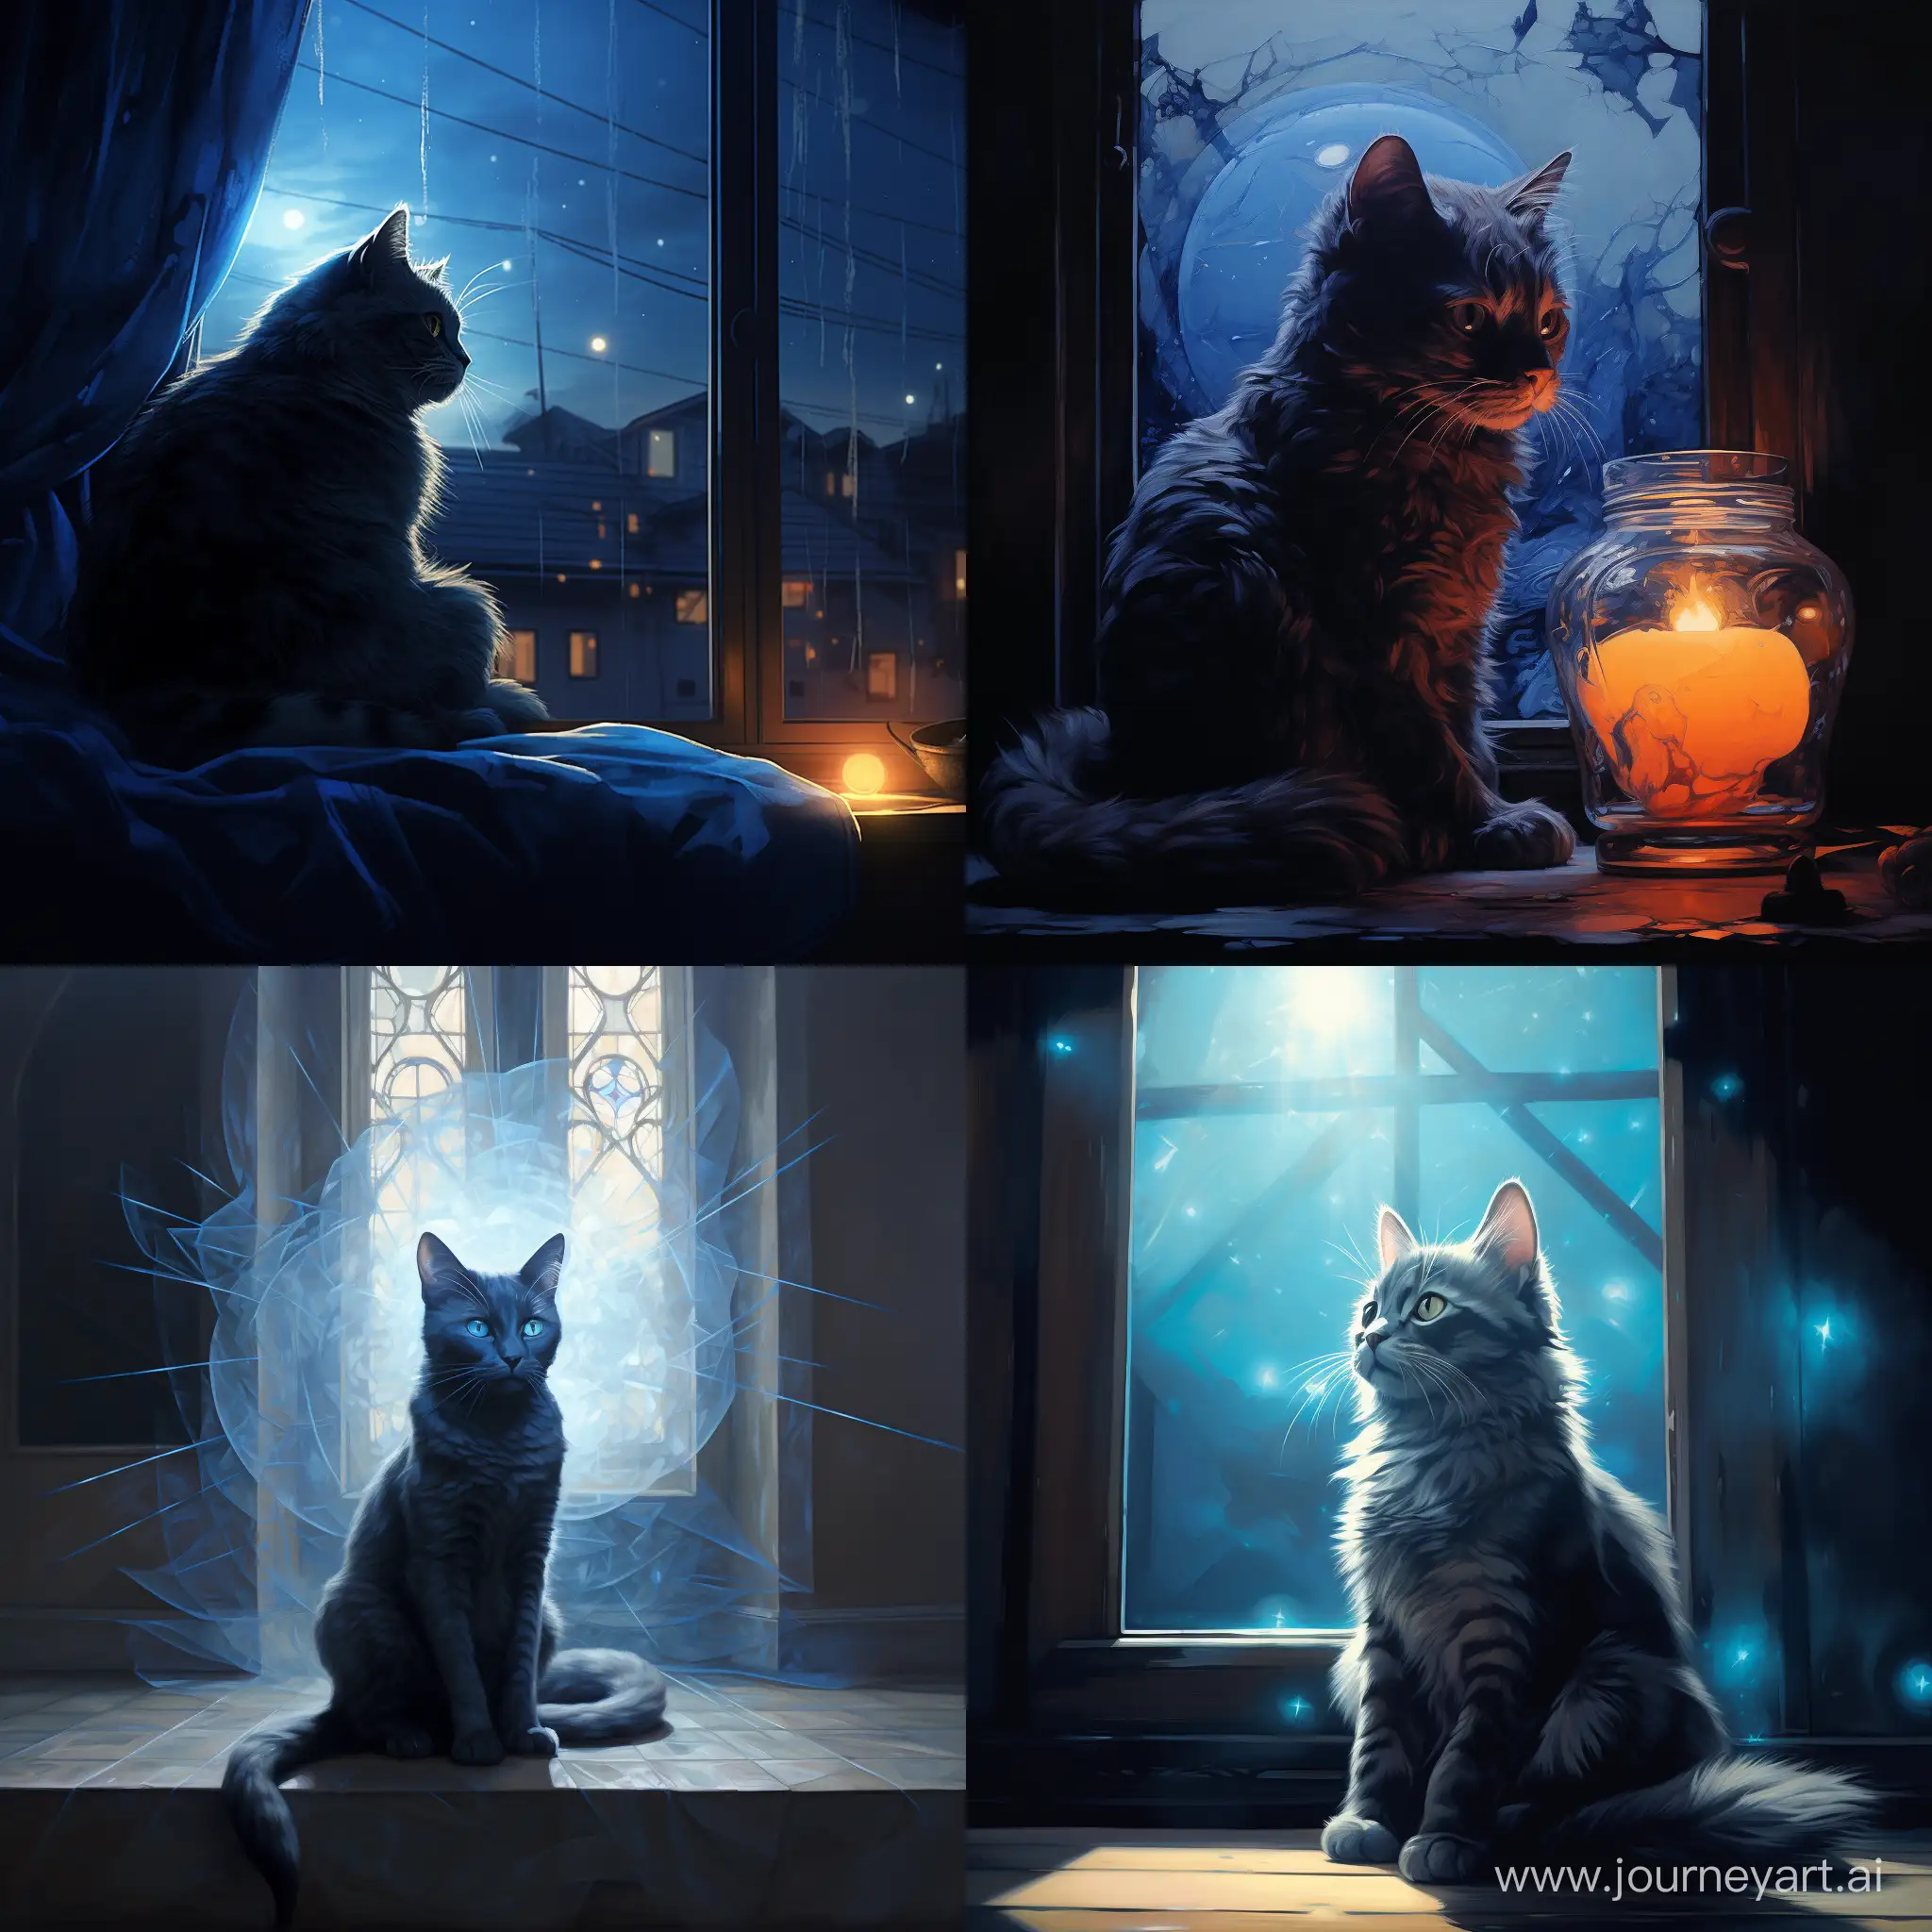 Light::2 art, голубая кошка с черными узорами лениво разлеглась на фоне окна, мягкий свет проникает через окна отбрасывая блики на кошку